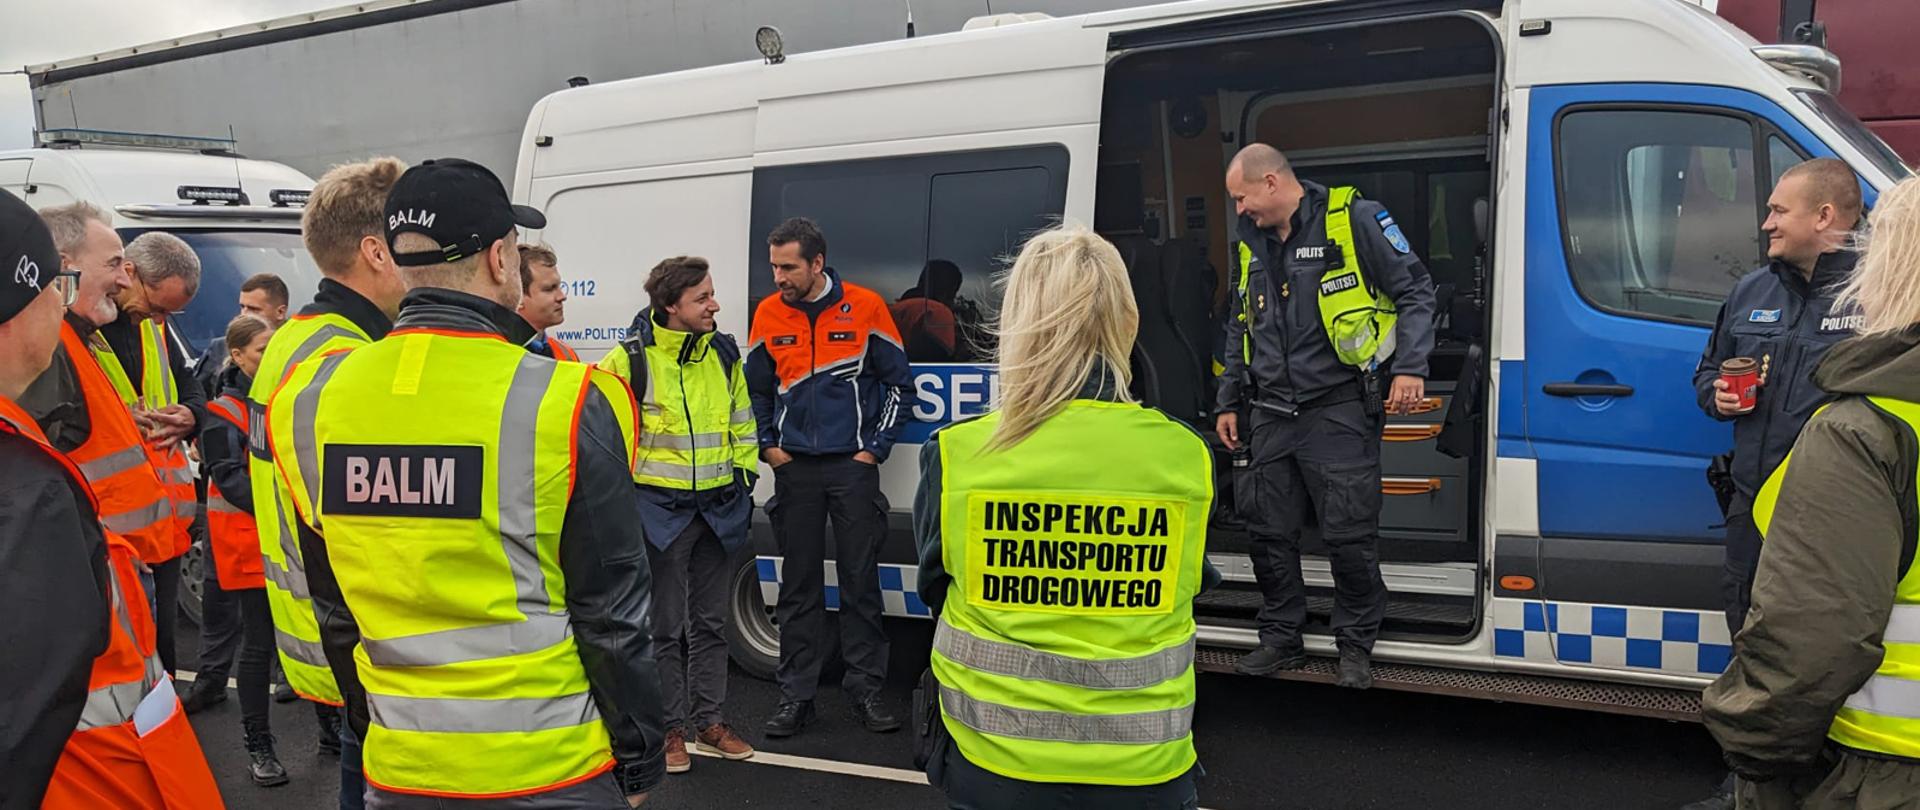 Wspólne kontrole drogowe w Tallinie z udziałem inspektorów Inspekcji Transportu Drogowego
